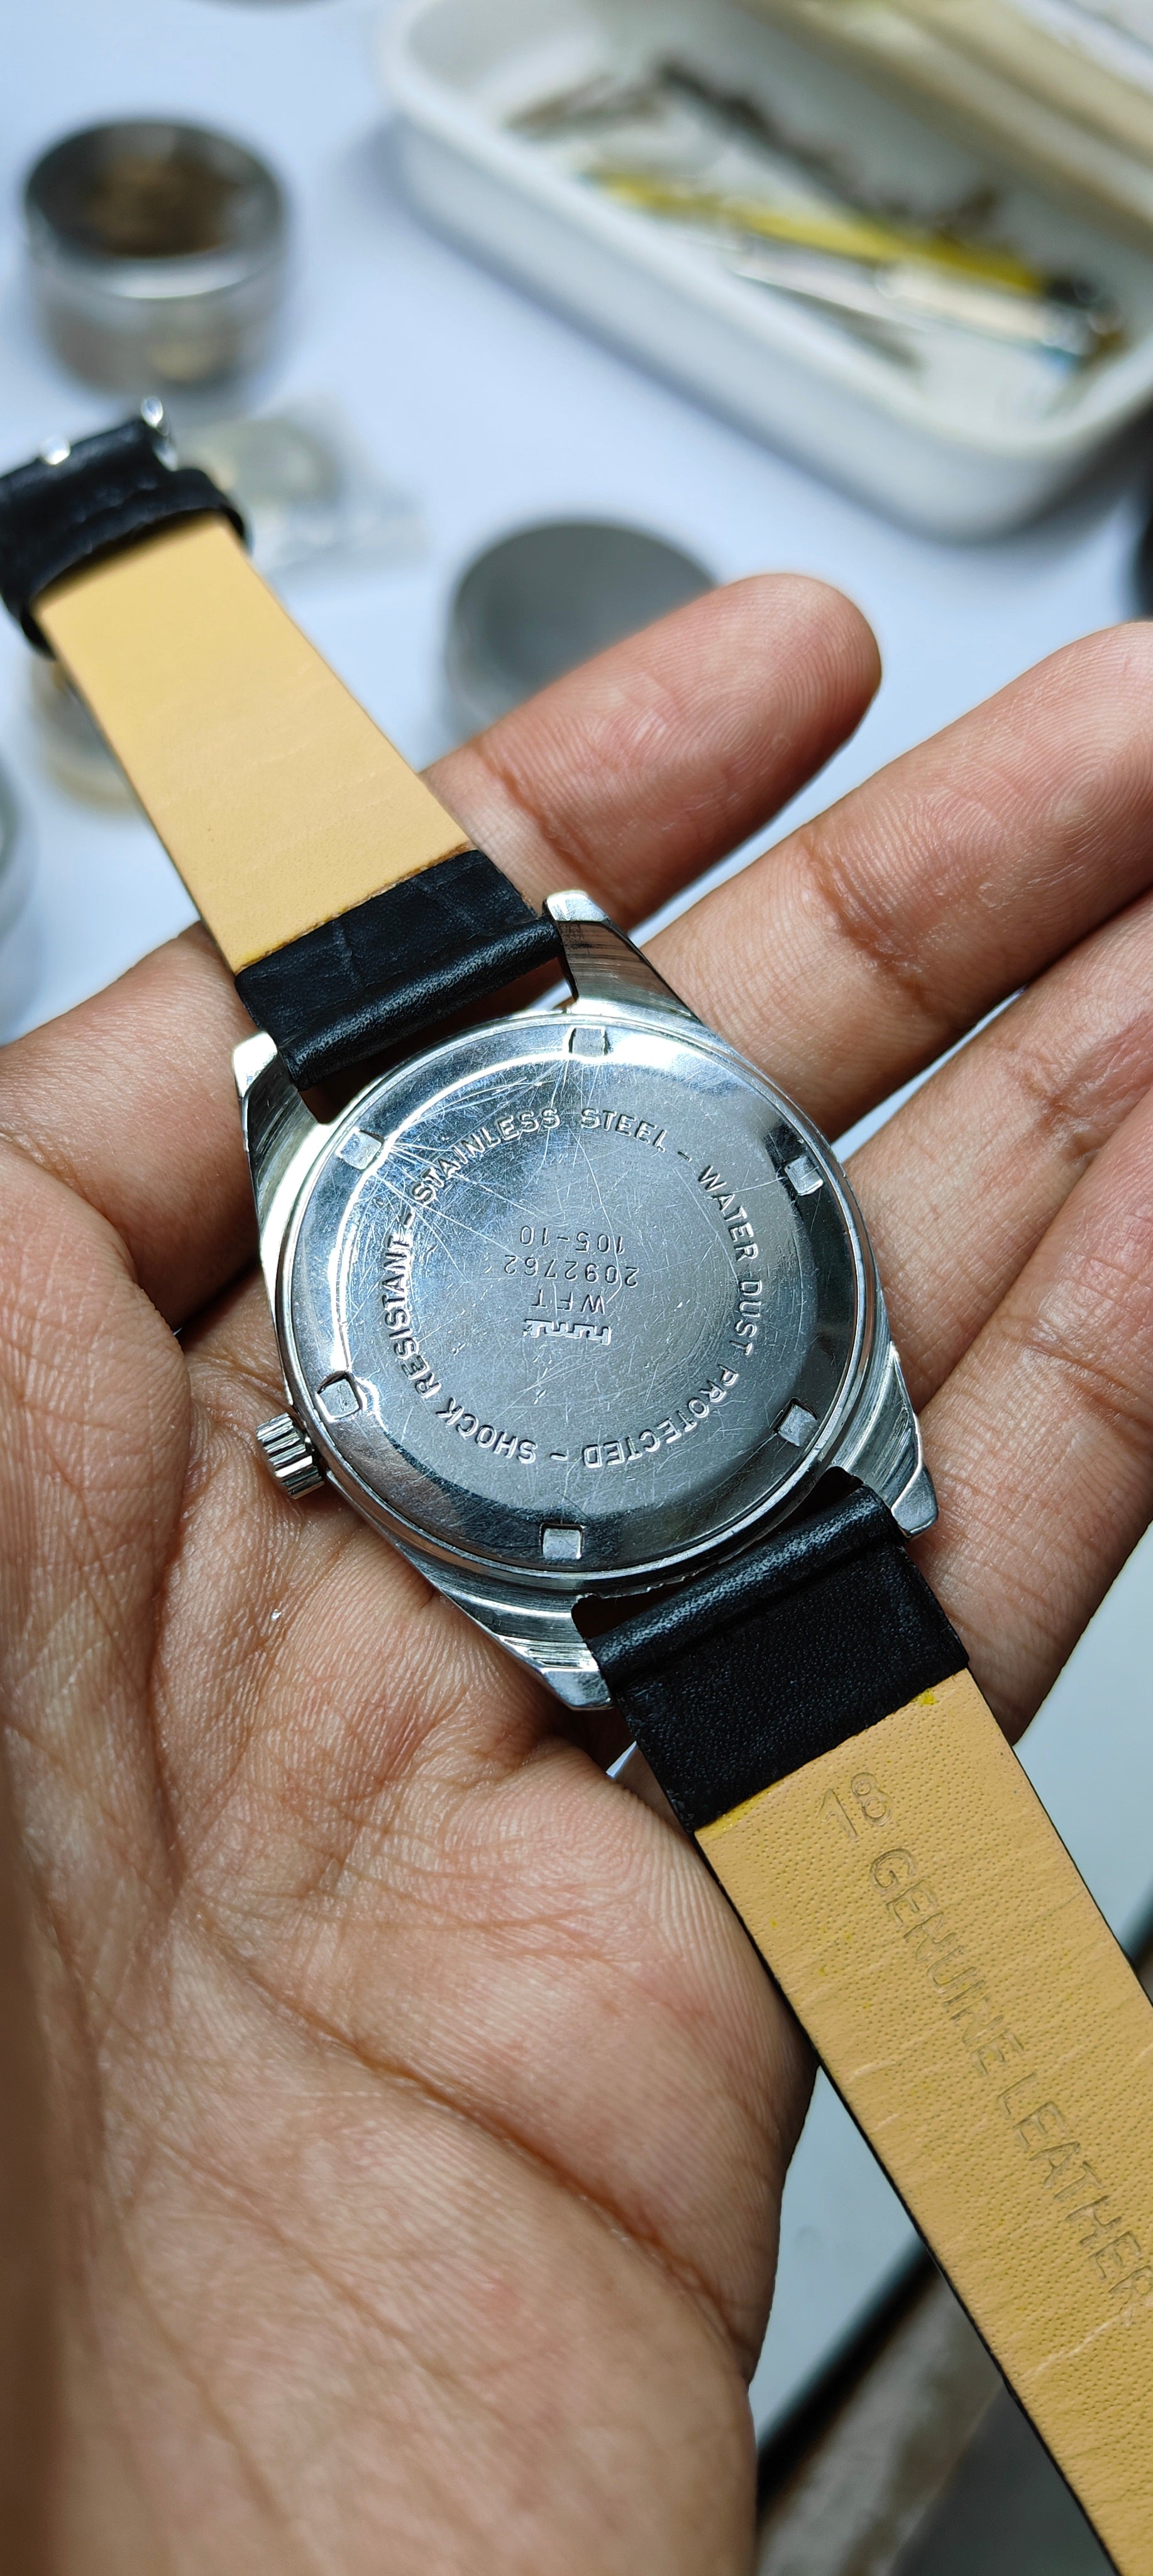 Vintage Watch Company - Hmt janata BD 🖤 | Facebook